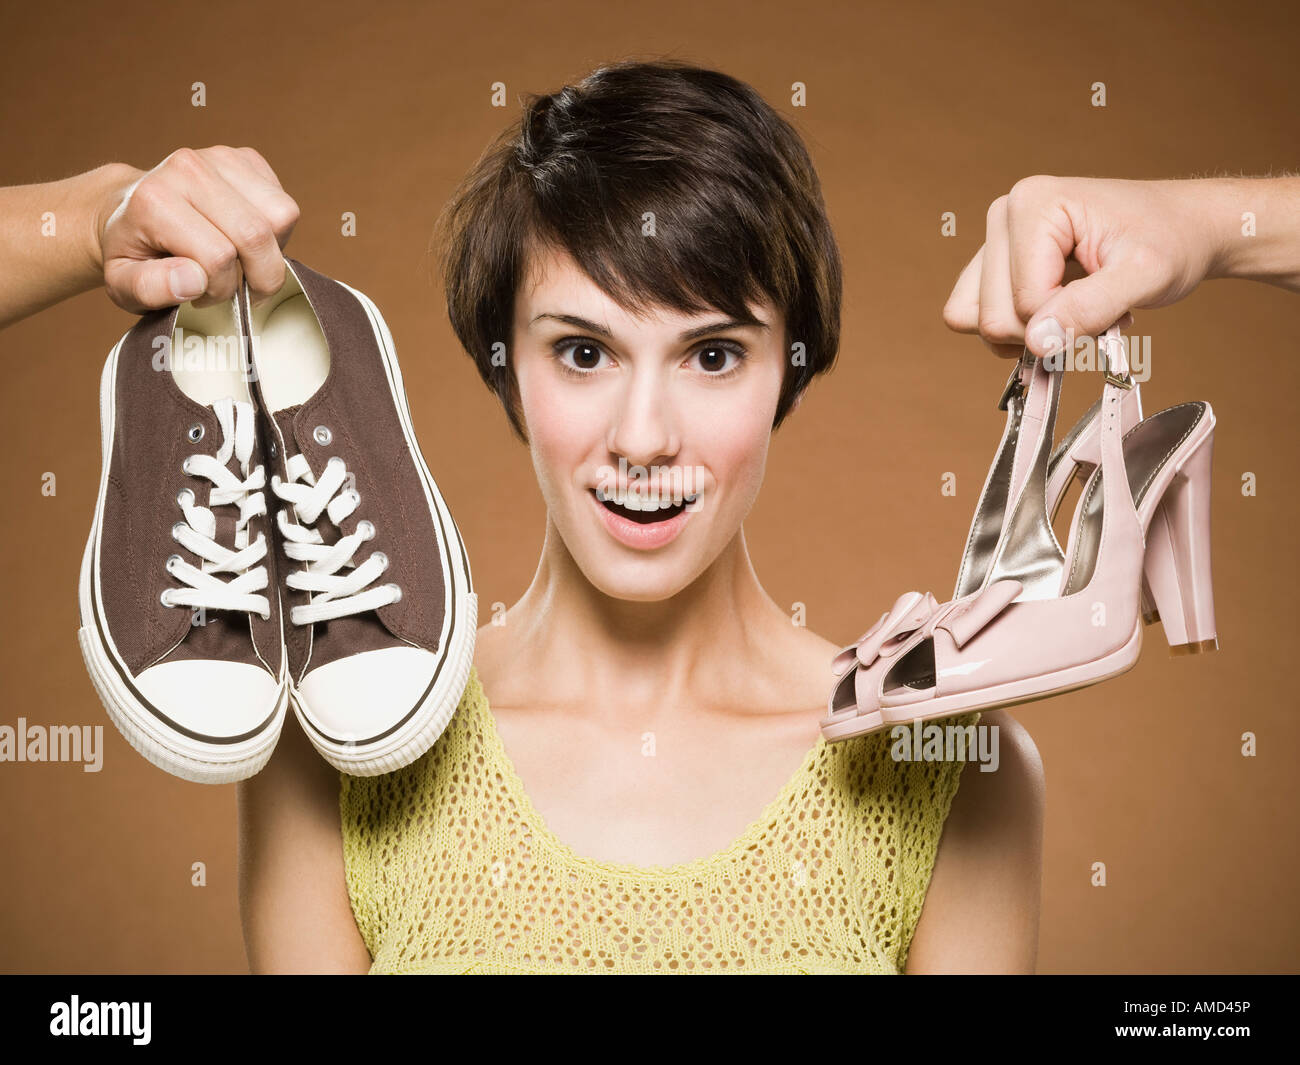 Запах от новой обуви. Фотосессия обуви. Неудобные туфли. Выбор обуви. Ноги в обуви.